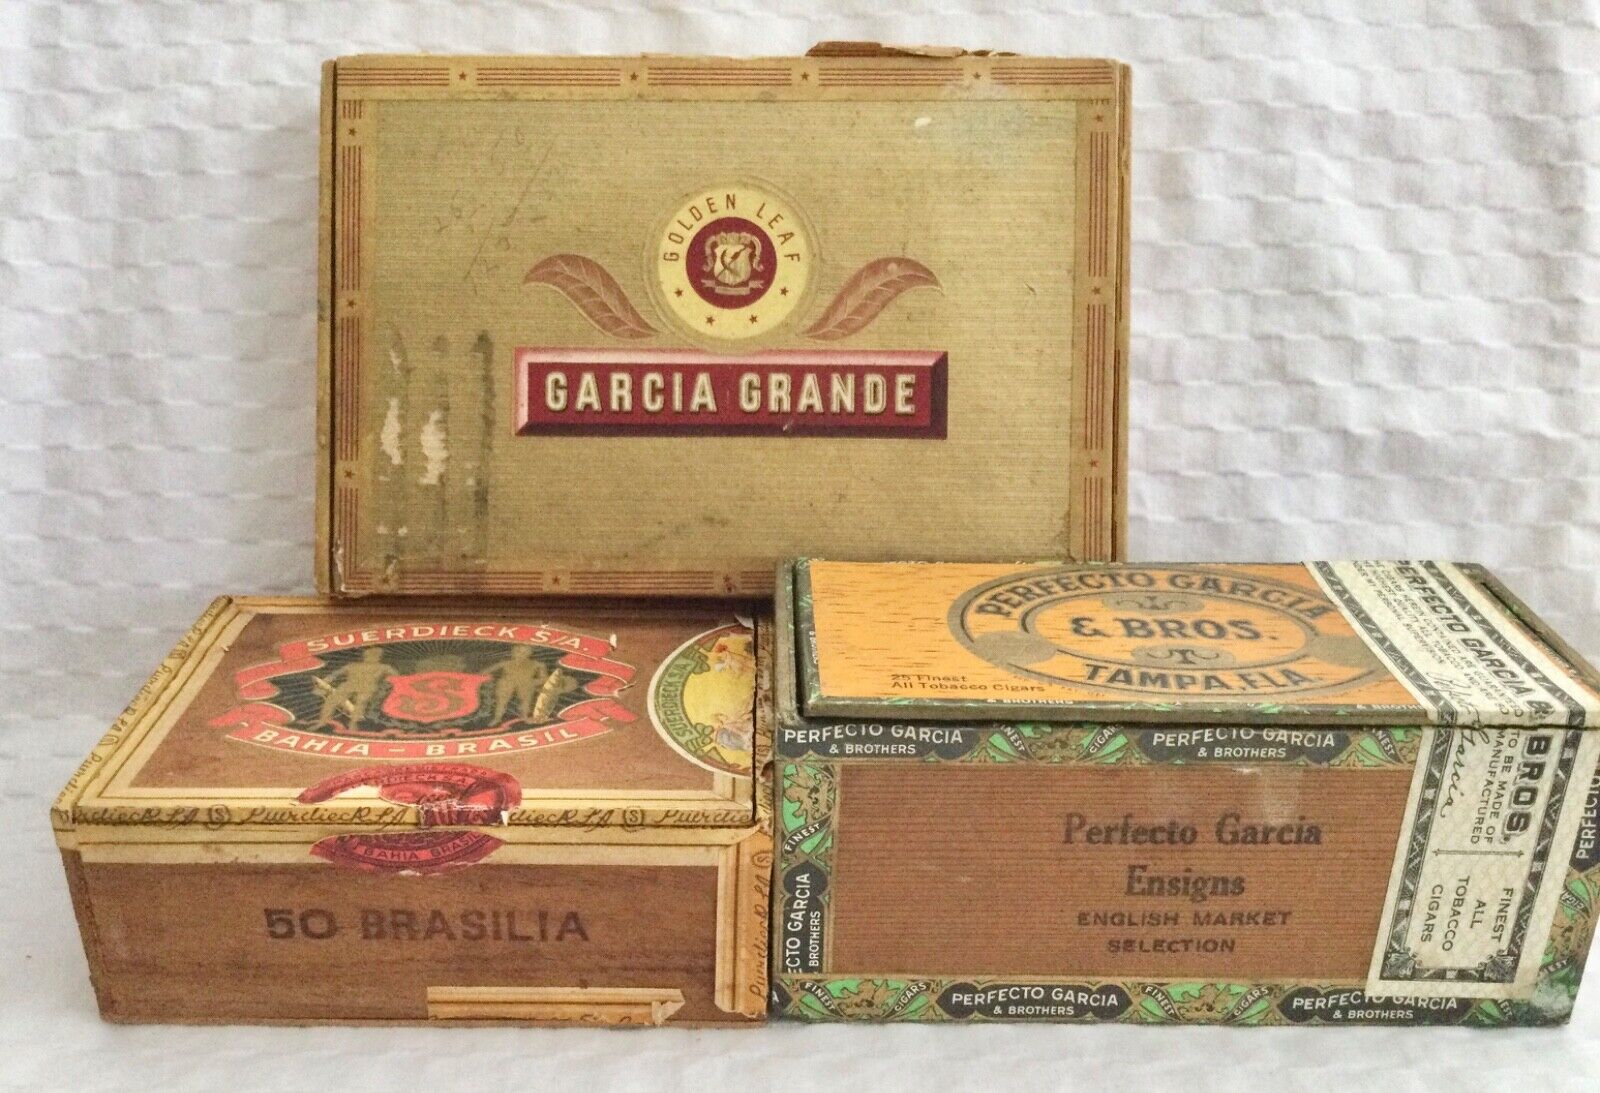 3 Vintage Cigar Boxes ~ Garcia Grande, Perfecto Garcia & Bros., Suerdieck S/A